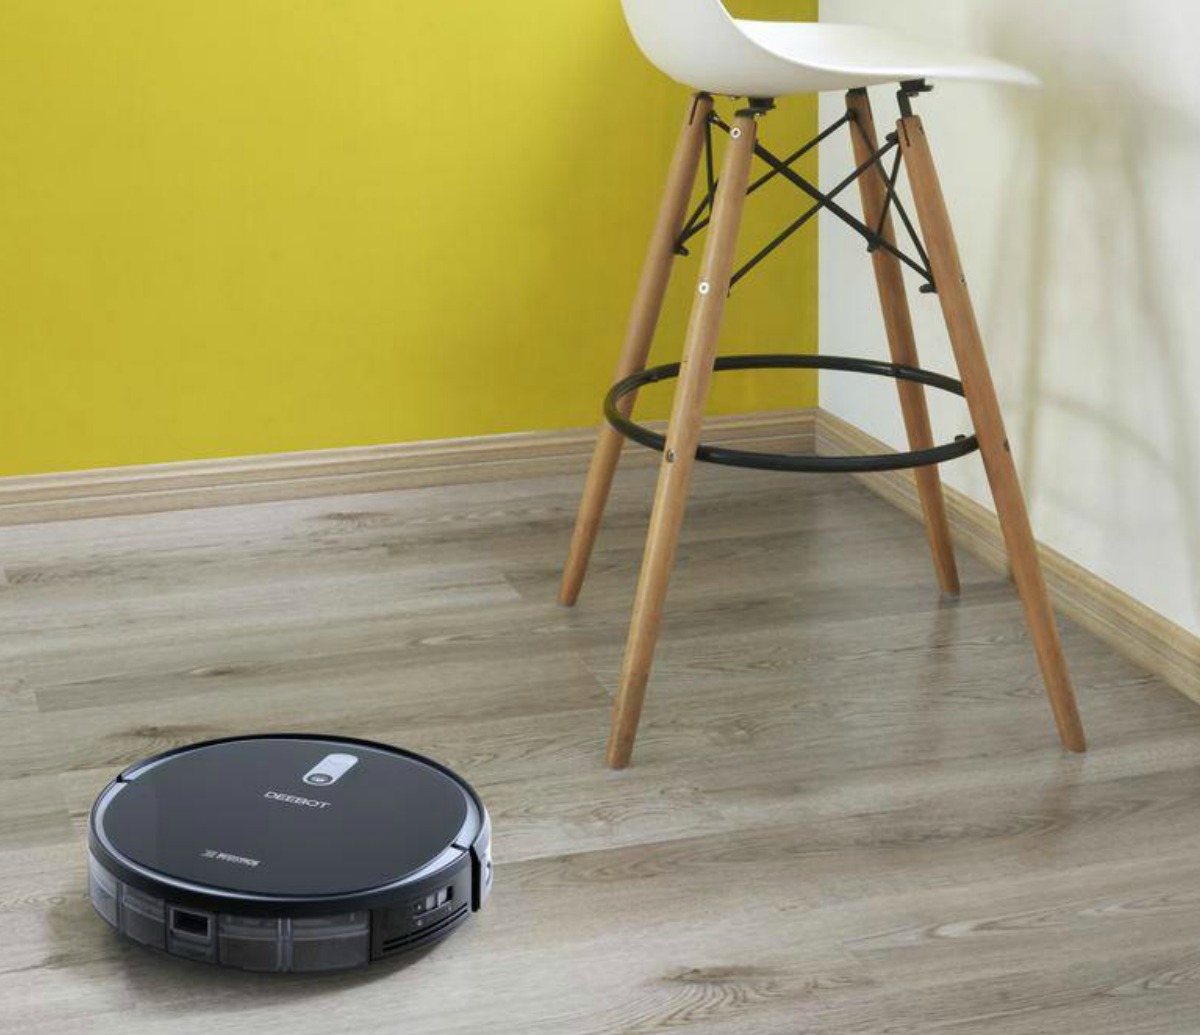 Smart Vacuum from ECOVAC on hardwood floor near stool